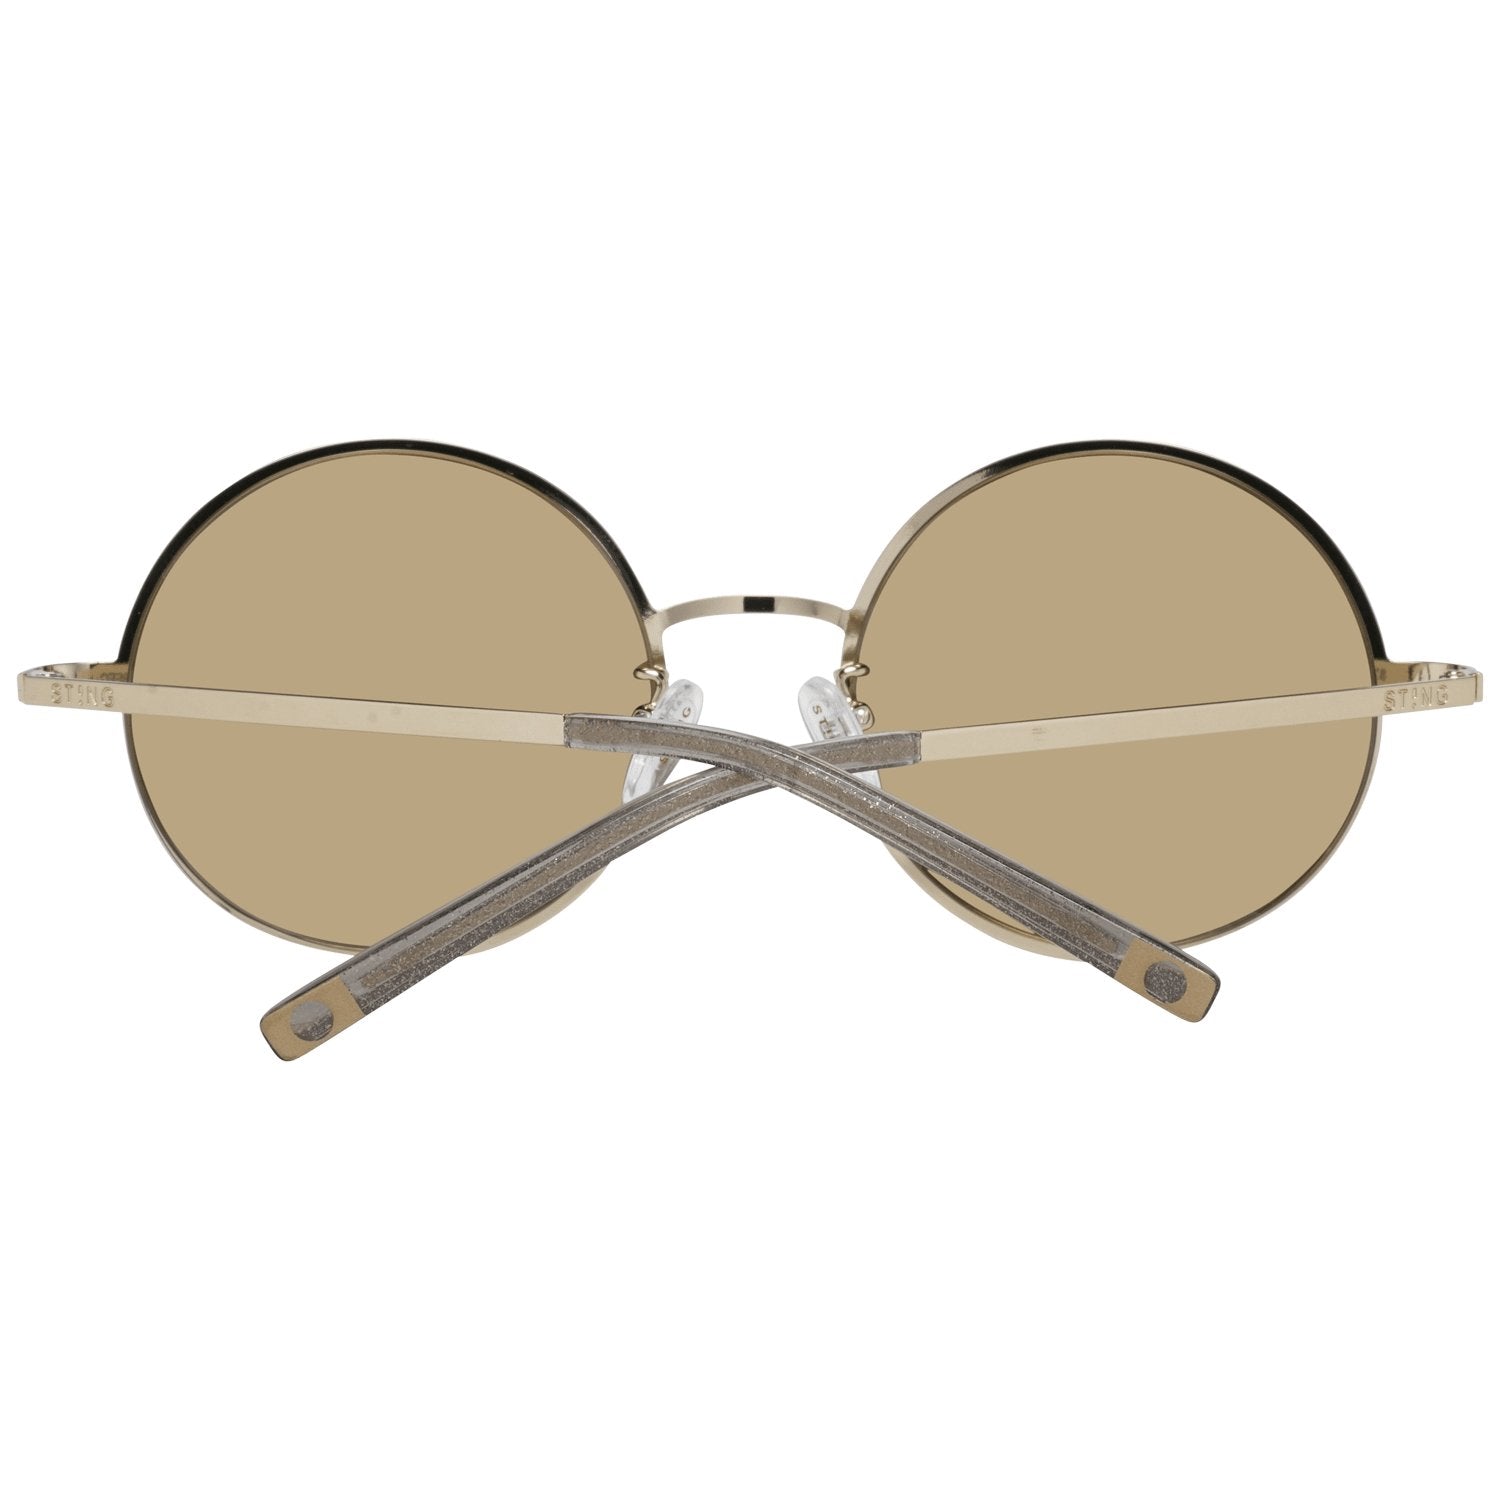 Sting Gold Sunglasses for Woman - Fizigo